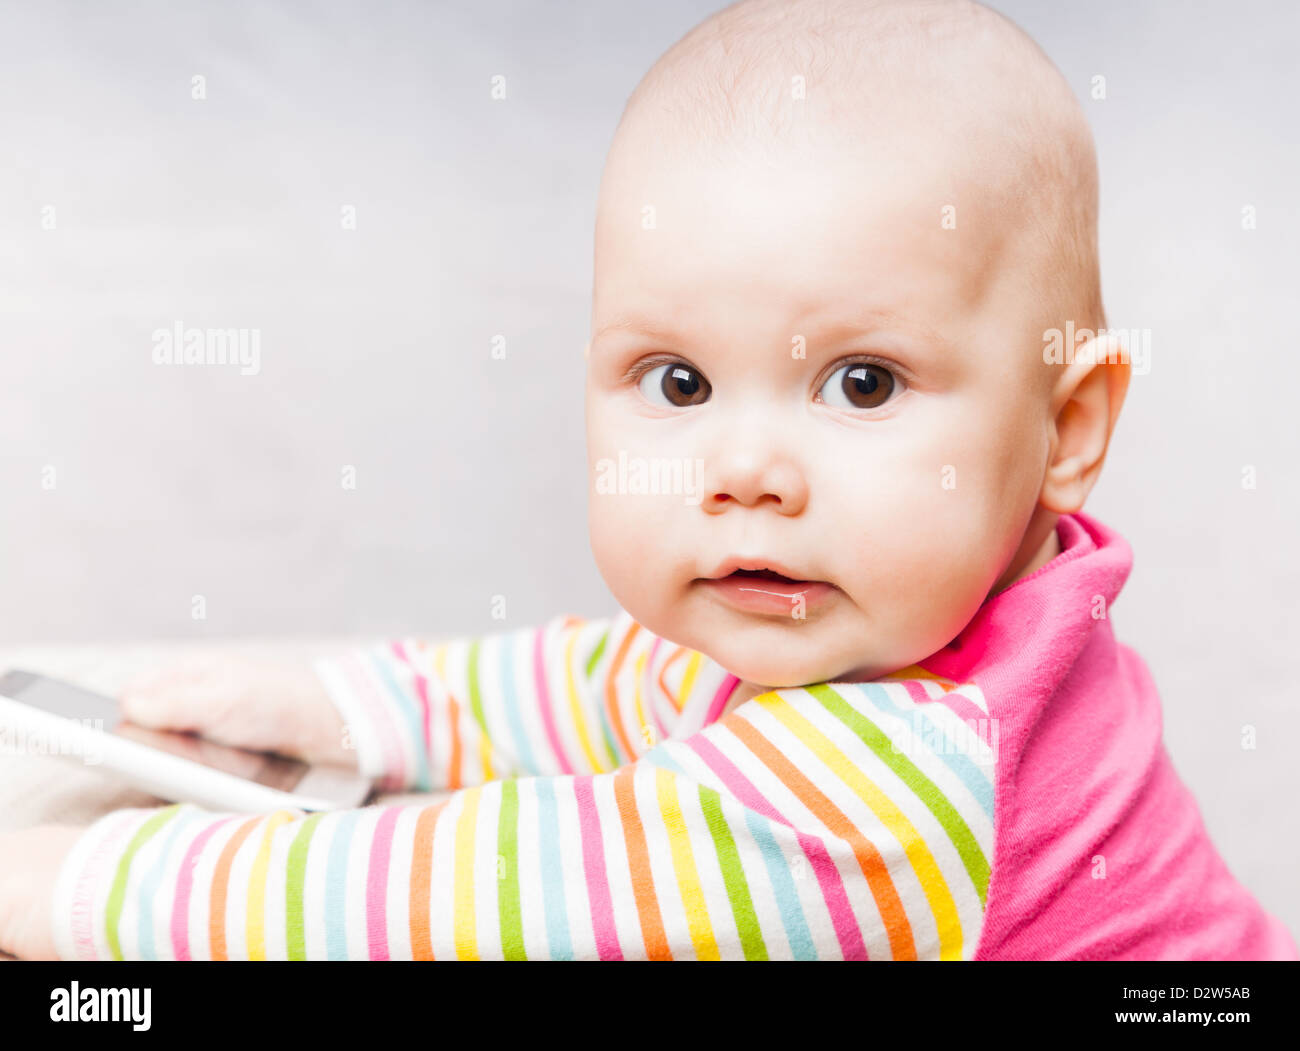 Petit bébé dans des vêtements à rayures avec un téléphone mobile Banque D'Images